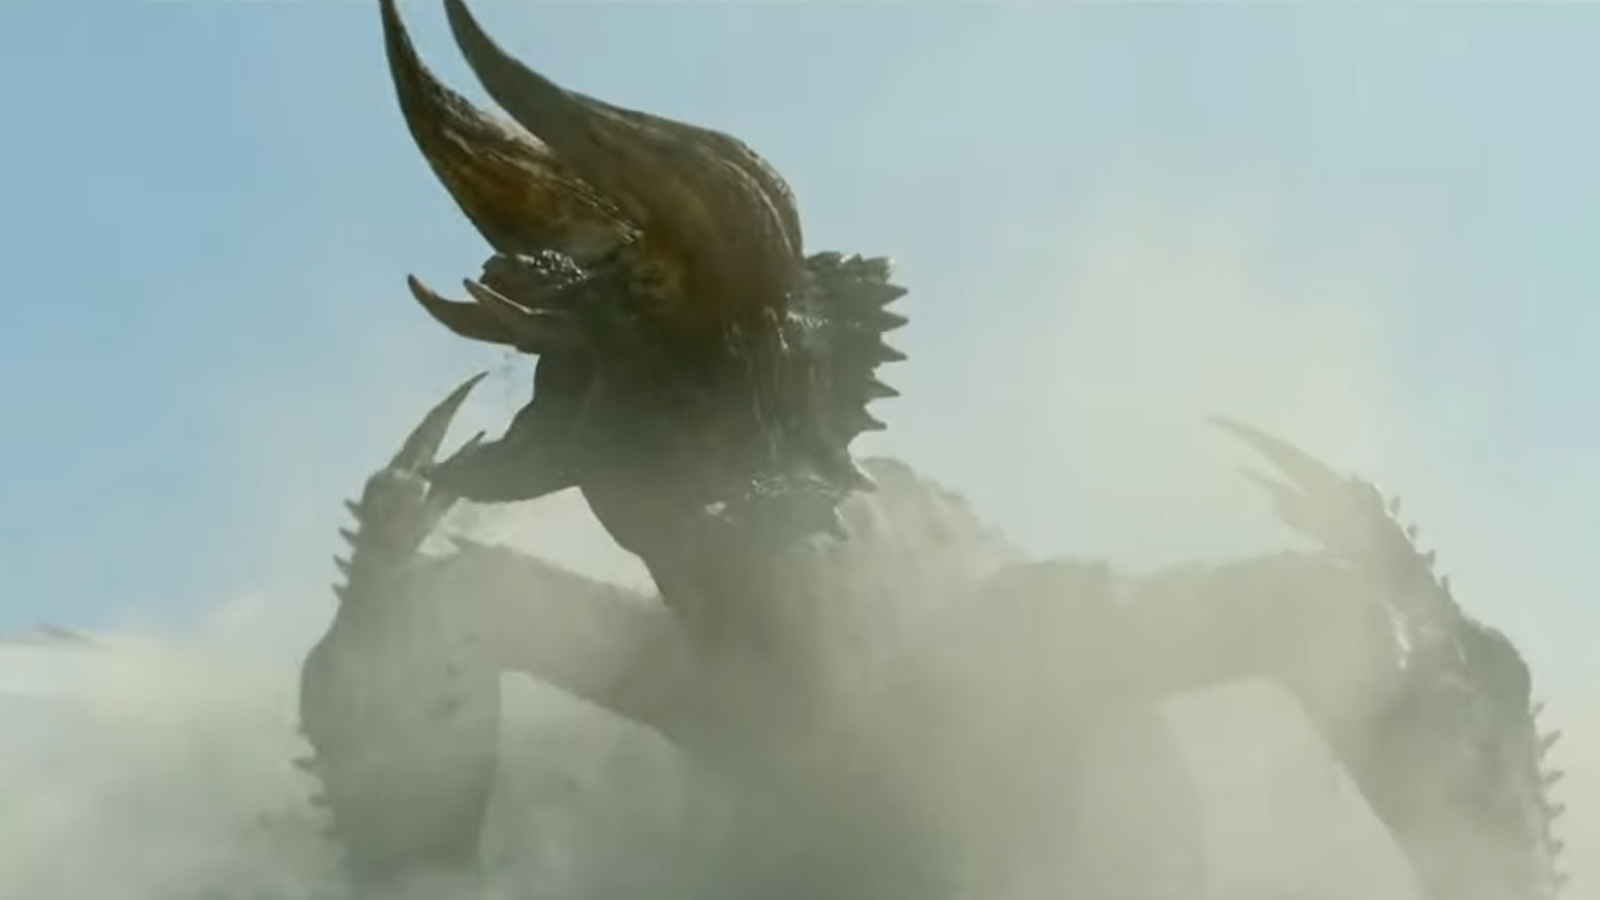 Filme Monster Hunter recebe primeiro teaser